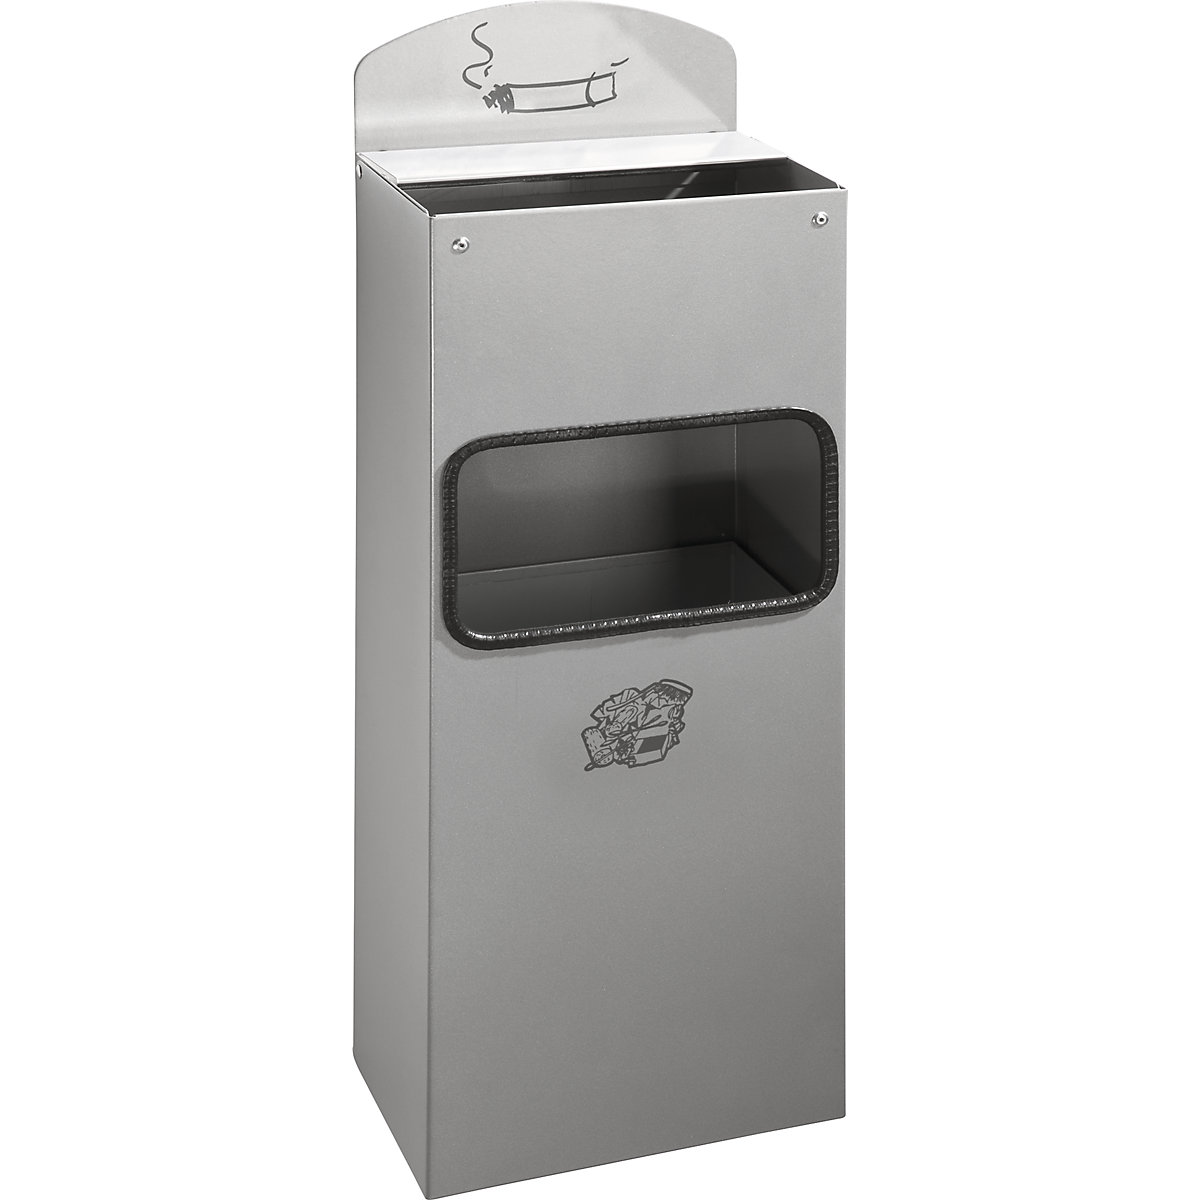 VAR – Kombinovaný nástěnný popelník s vhazovacím otvorem pro odpadky, v x š x h 505 x 200 x 125 mm, ocelový plech, stříbrná